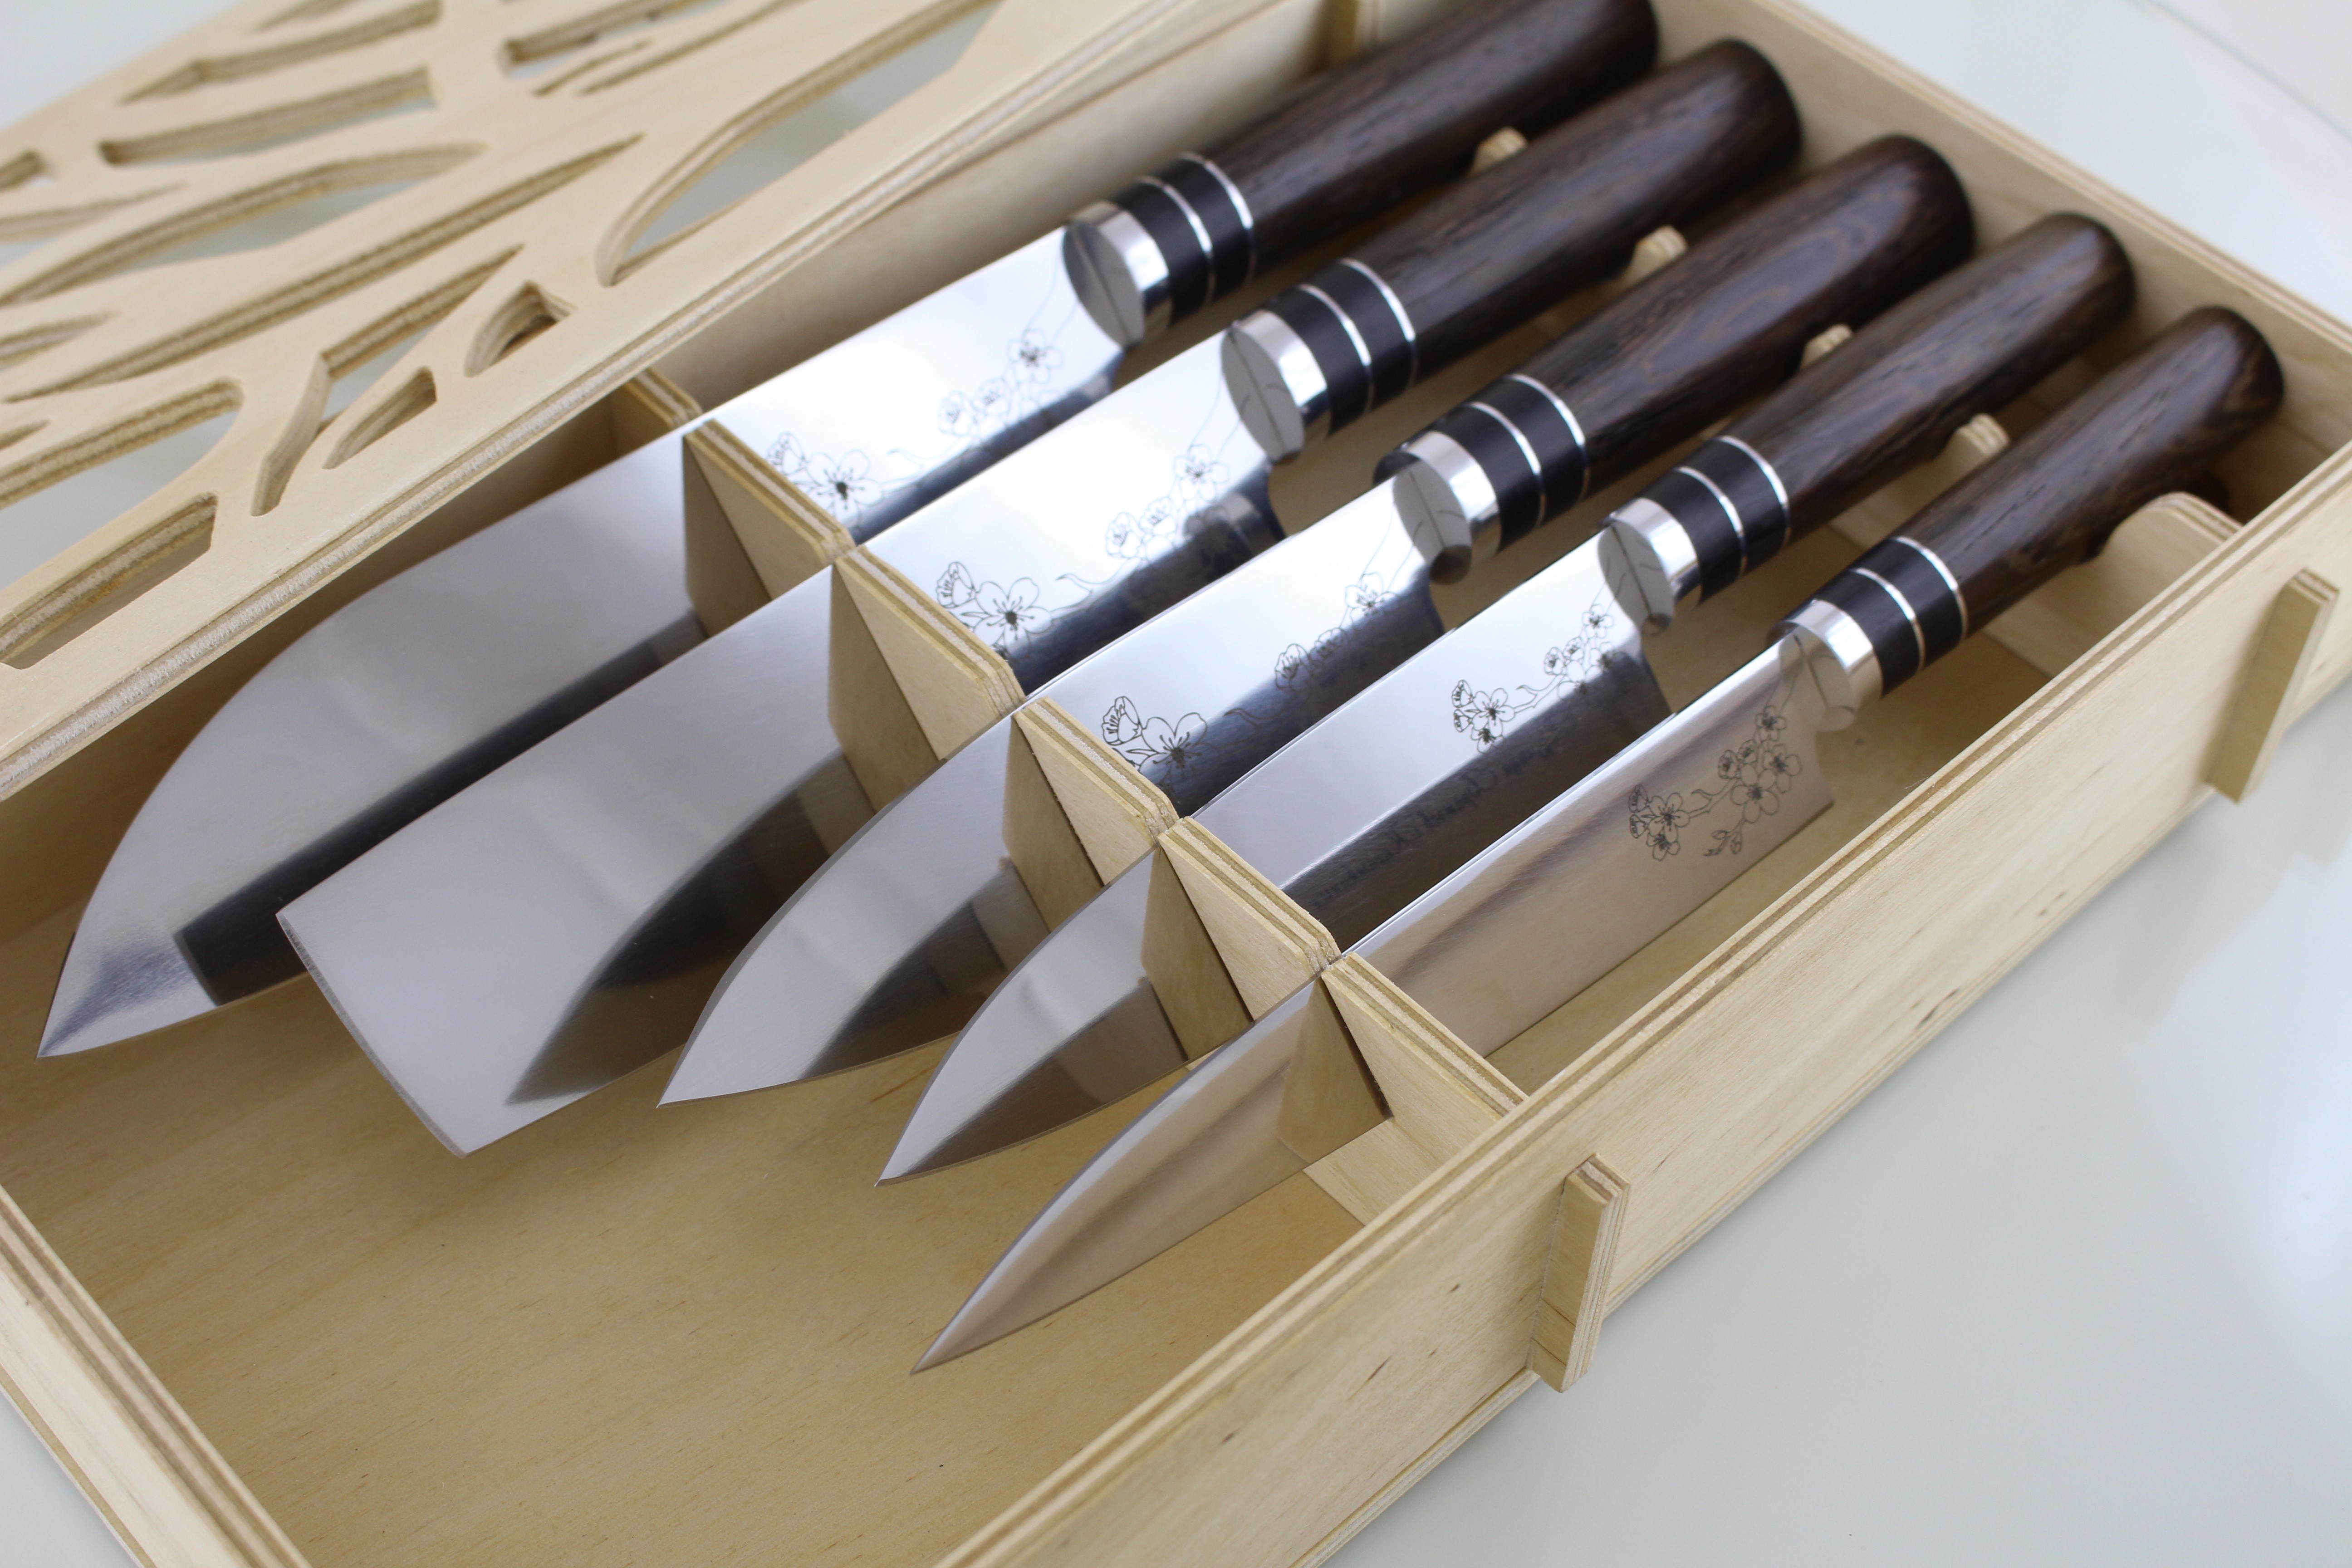 Где Можно Купить Японские Ножи